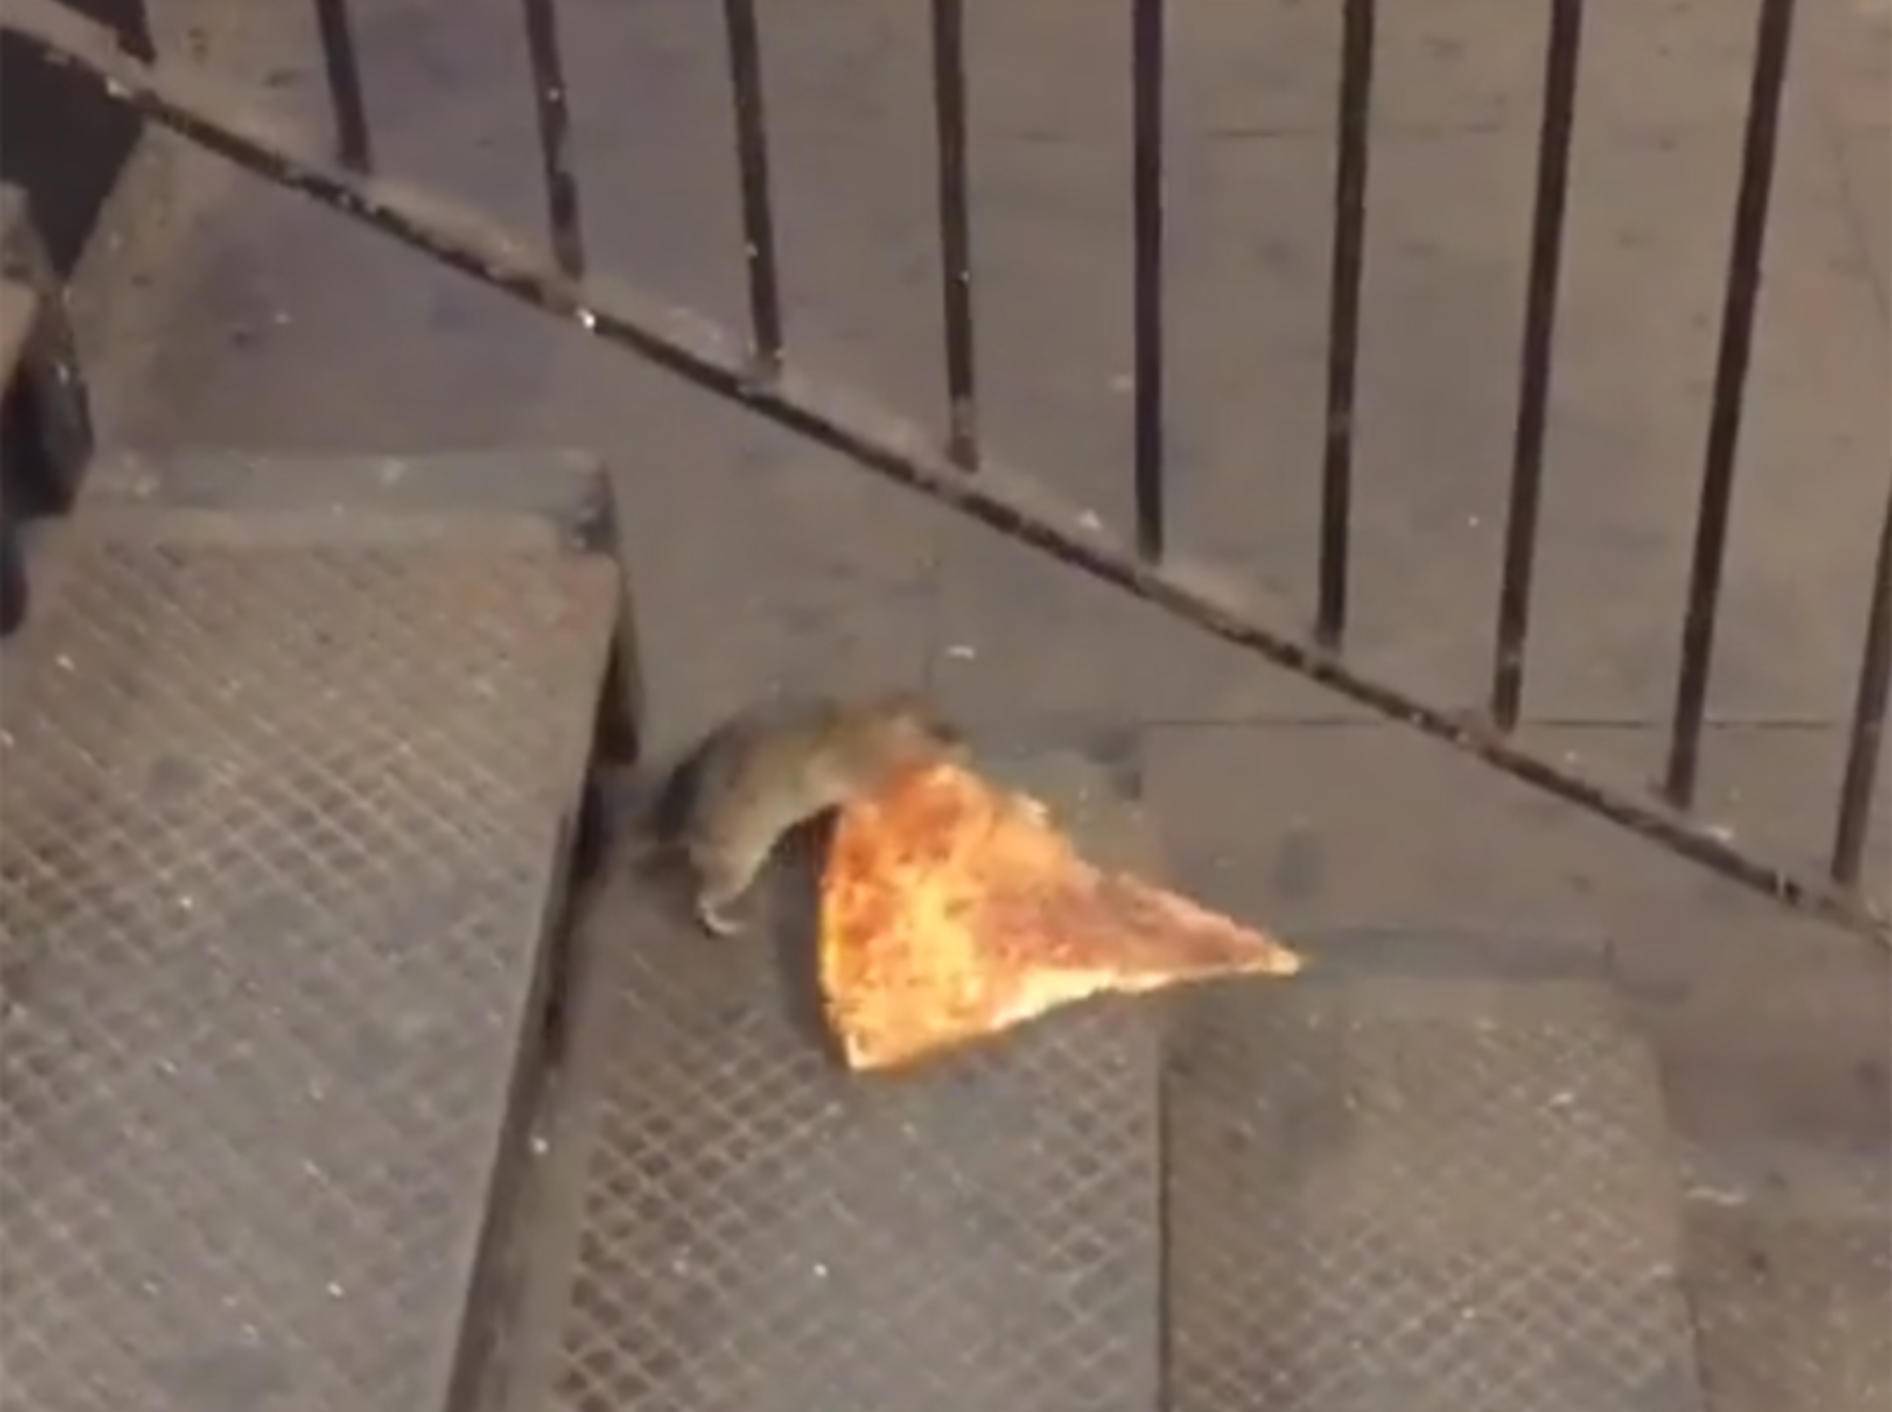 Lecker, Pizza! Ratte bringt Futter in Sicherheit – YouTube / Matt Little